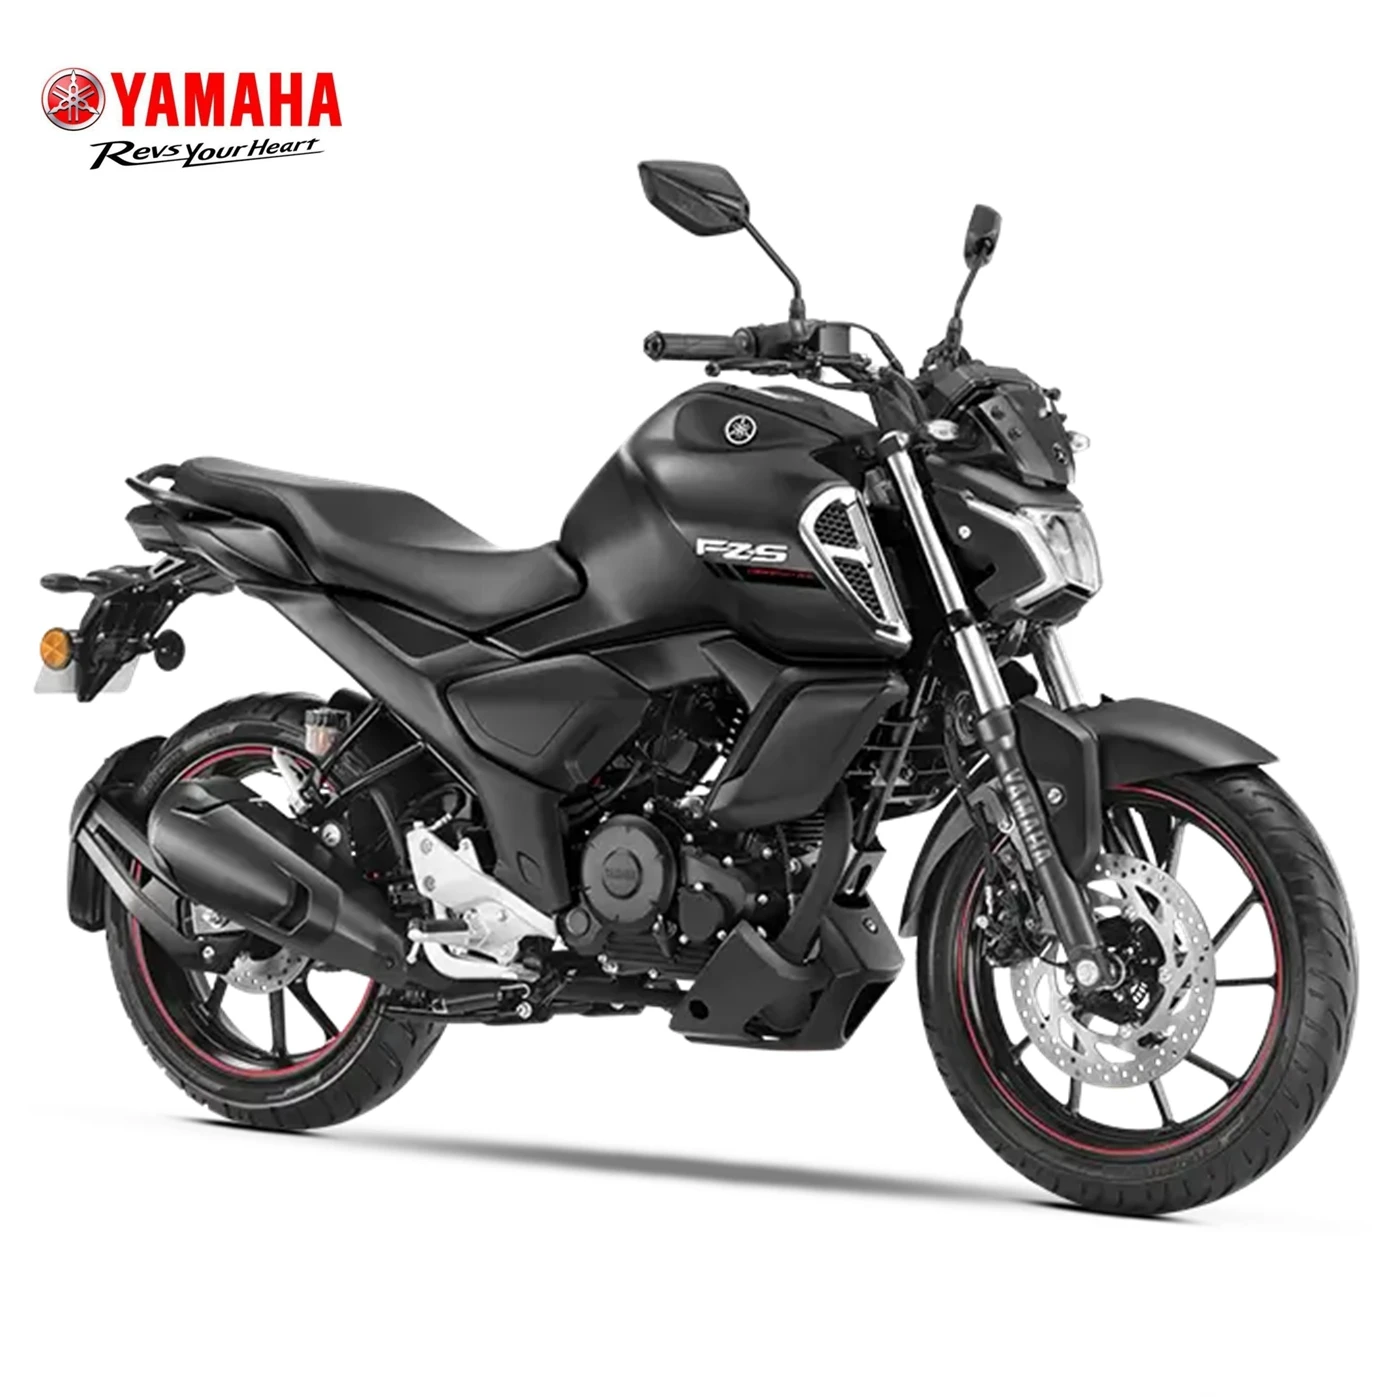 真新しいインドヤマハFZX150ストリートオートバイ| Alibaba.com